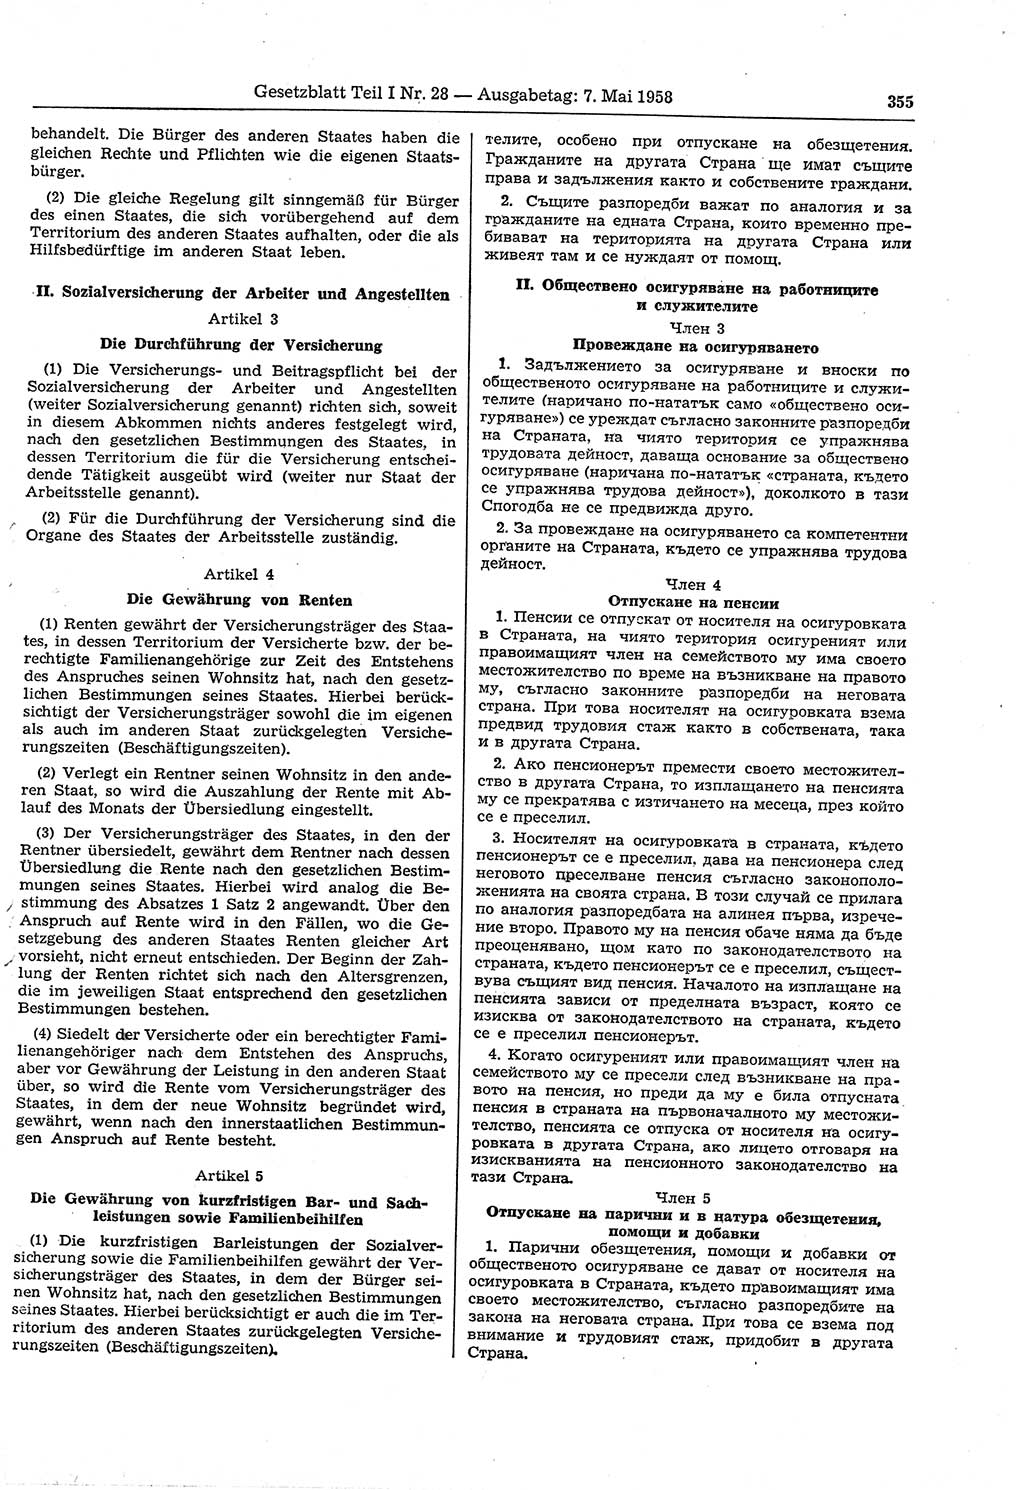 Gesetzblatt (GBl.) der Deutschen Demokratischen Republik (DDR) Teil Ⅰ 1958, Seite 355 (GBl. DDR Ⅰ 1958, S. 355)